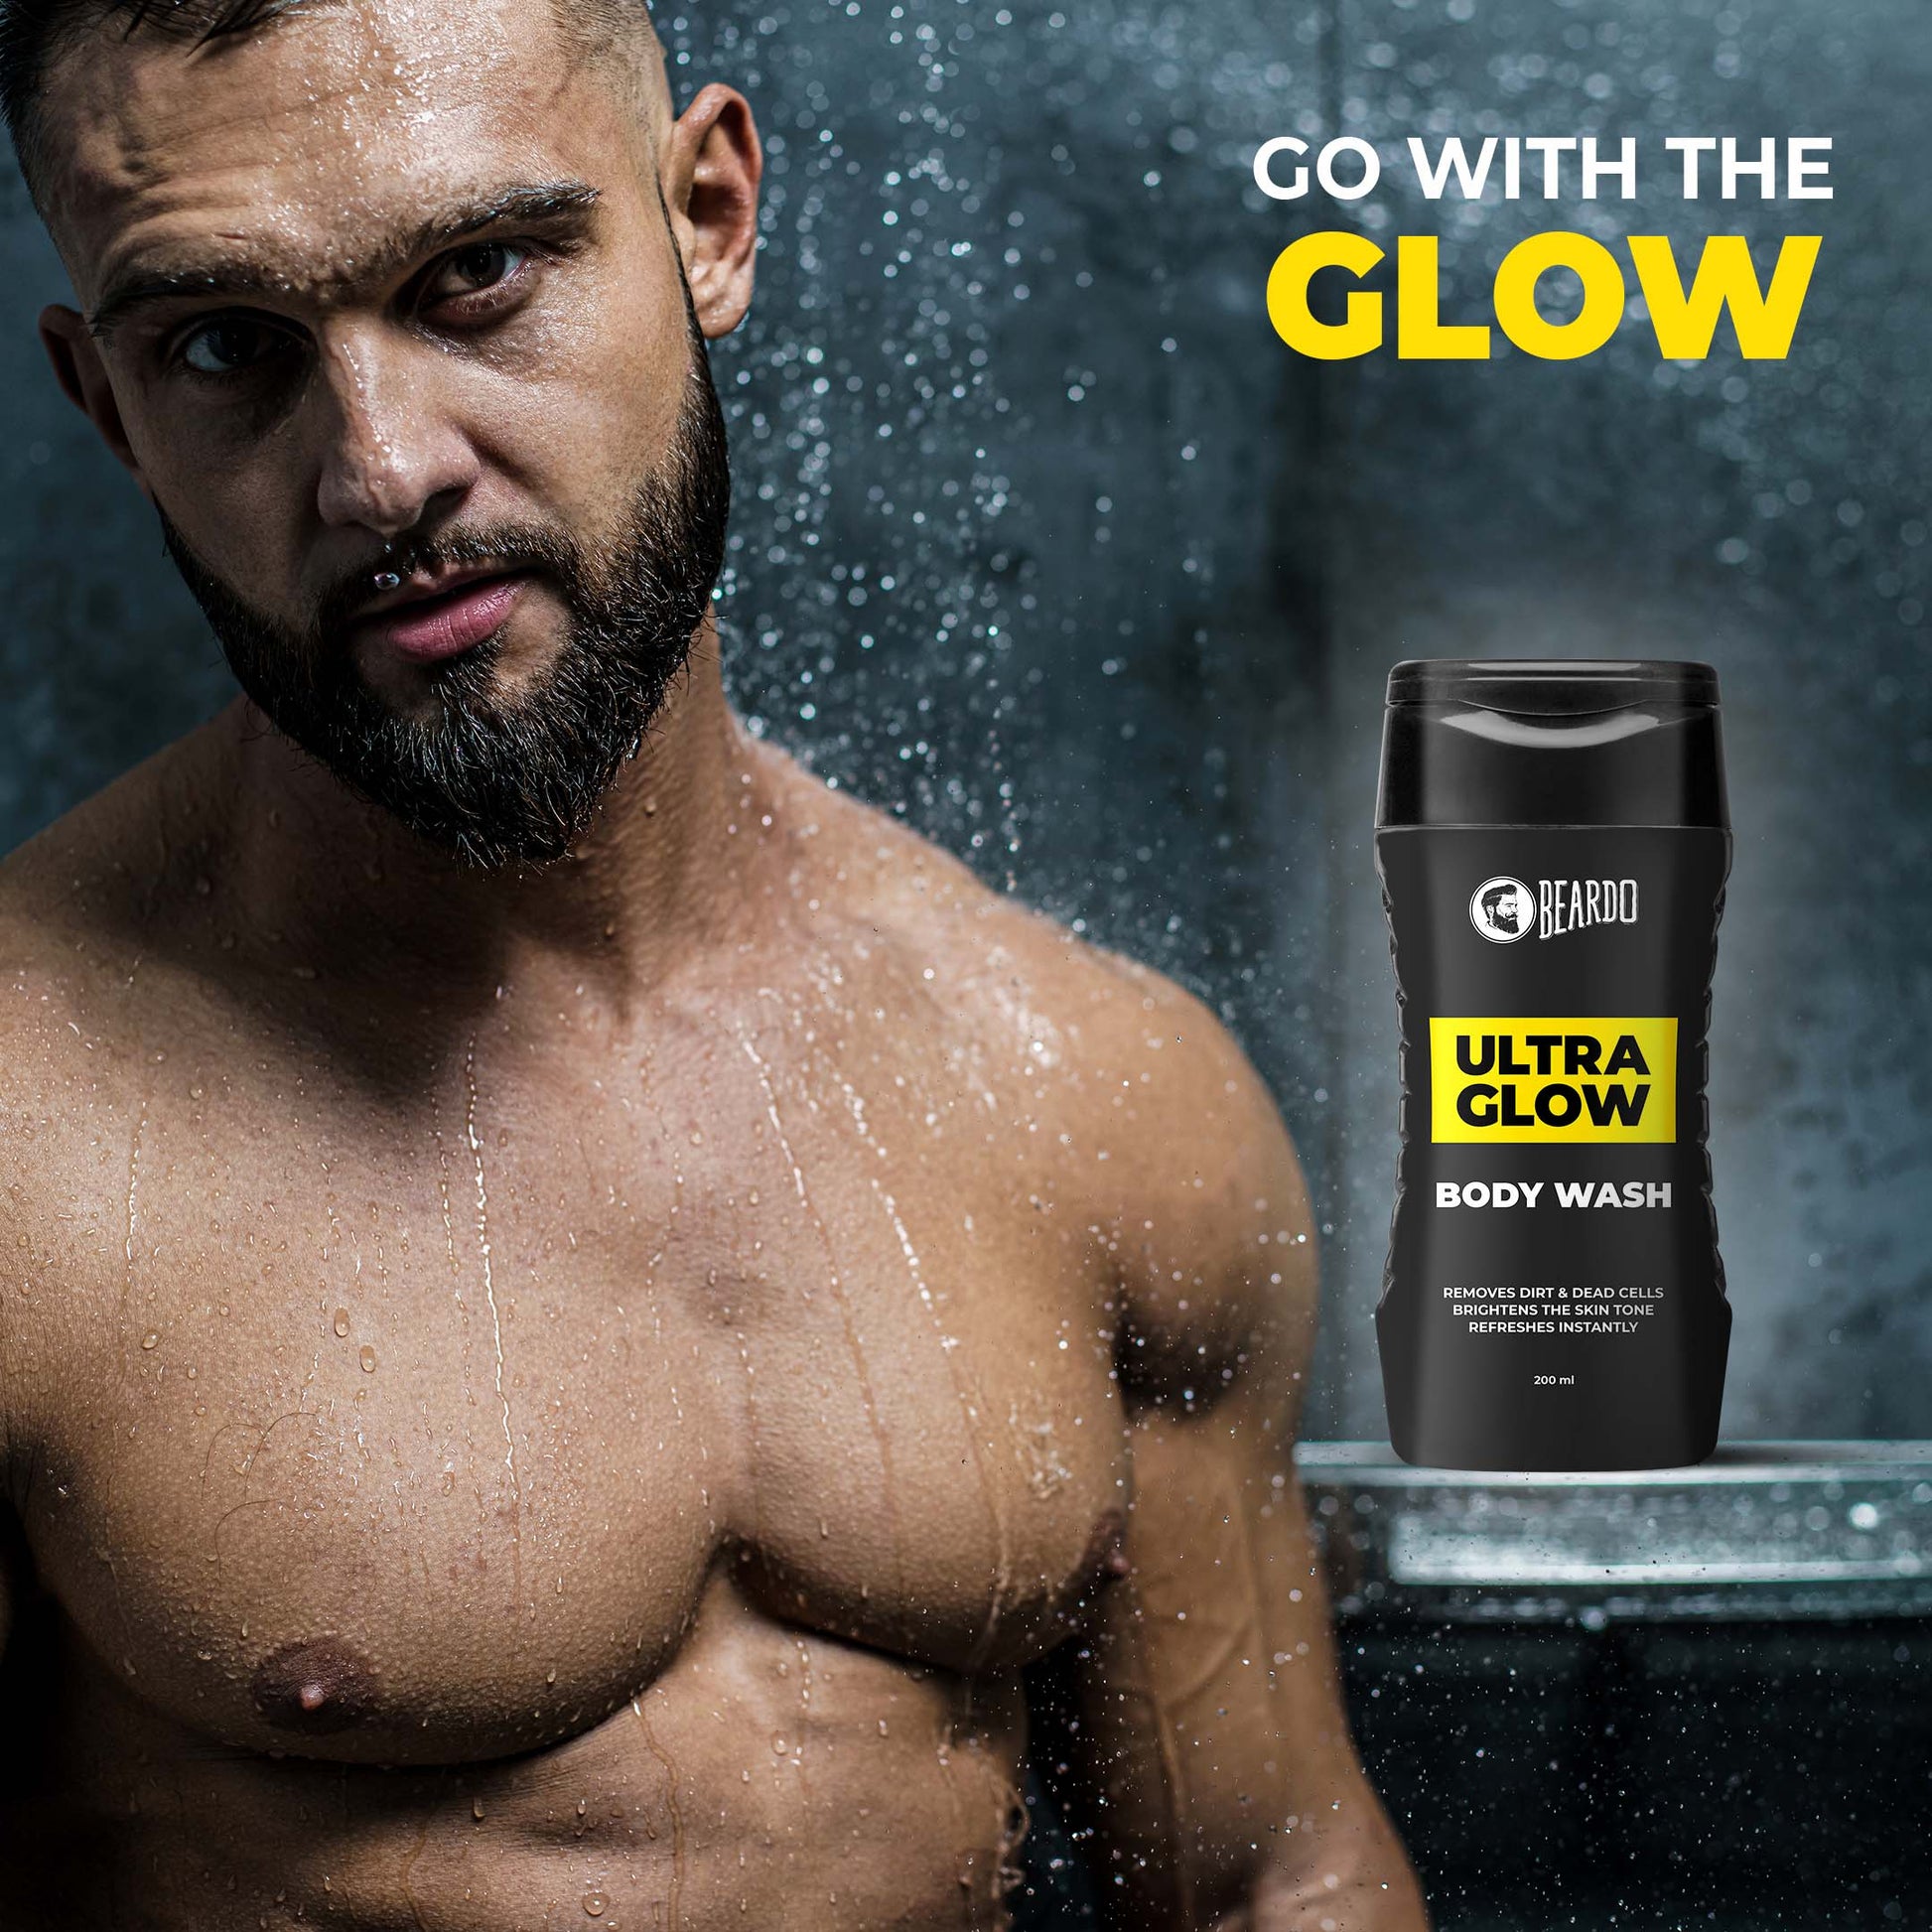 go with the glow, ultra glow body wash